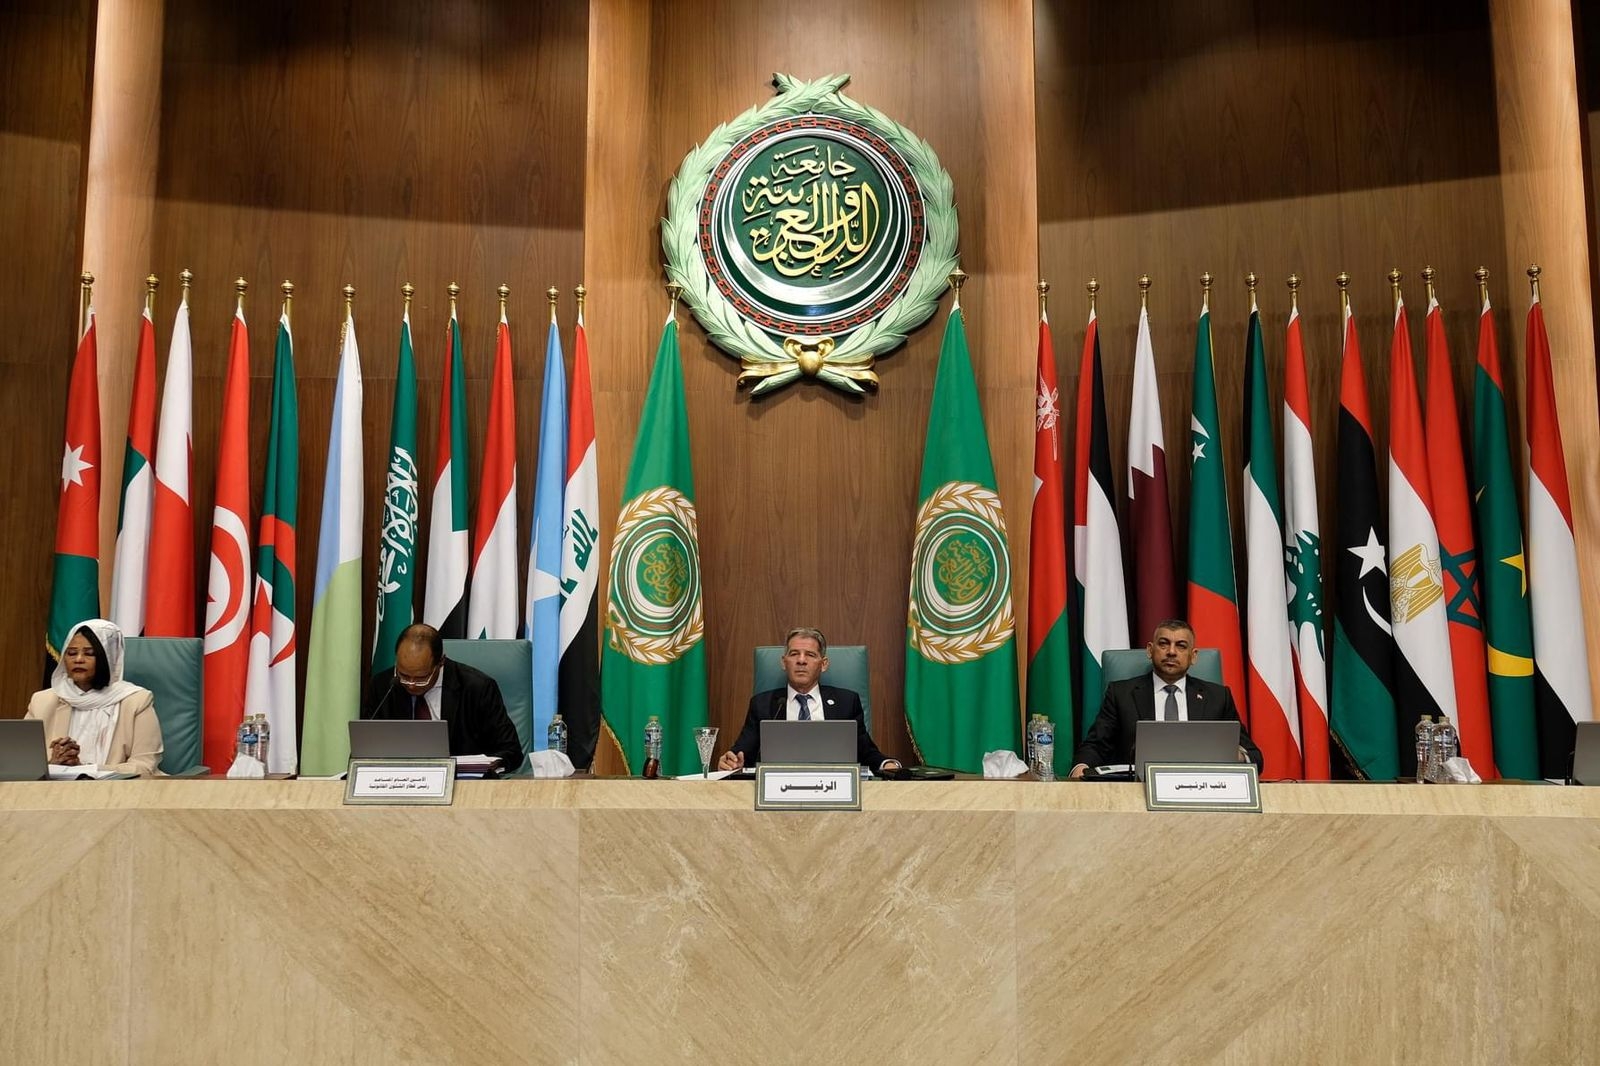 القاضي حنون يقترح تأسيس مجلس رؤساء أجهزة إنفاذ القانون العربية المعنيَّة بالنزاهة ومكافحة الفساد